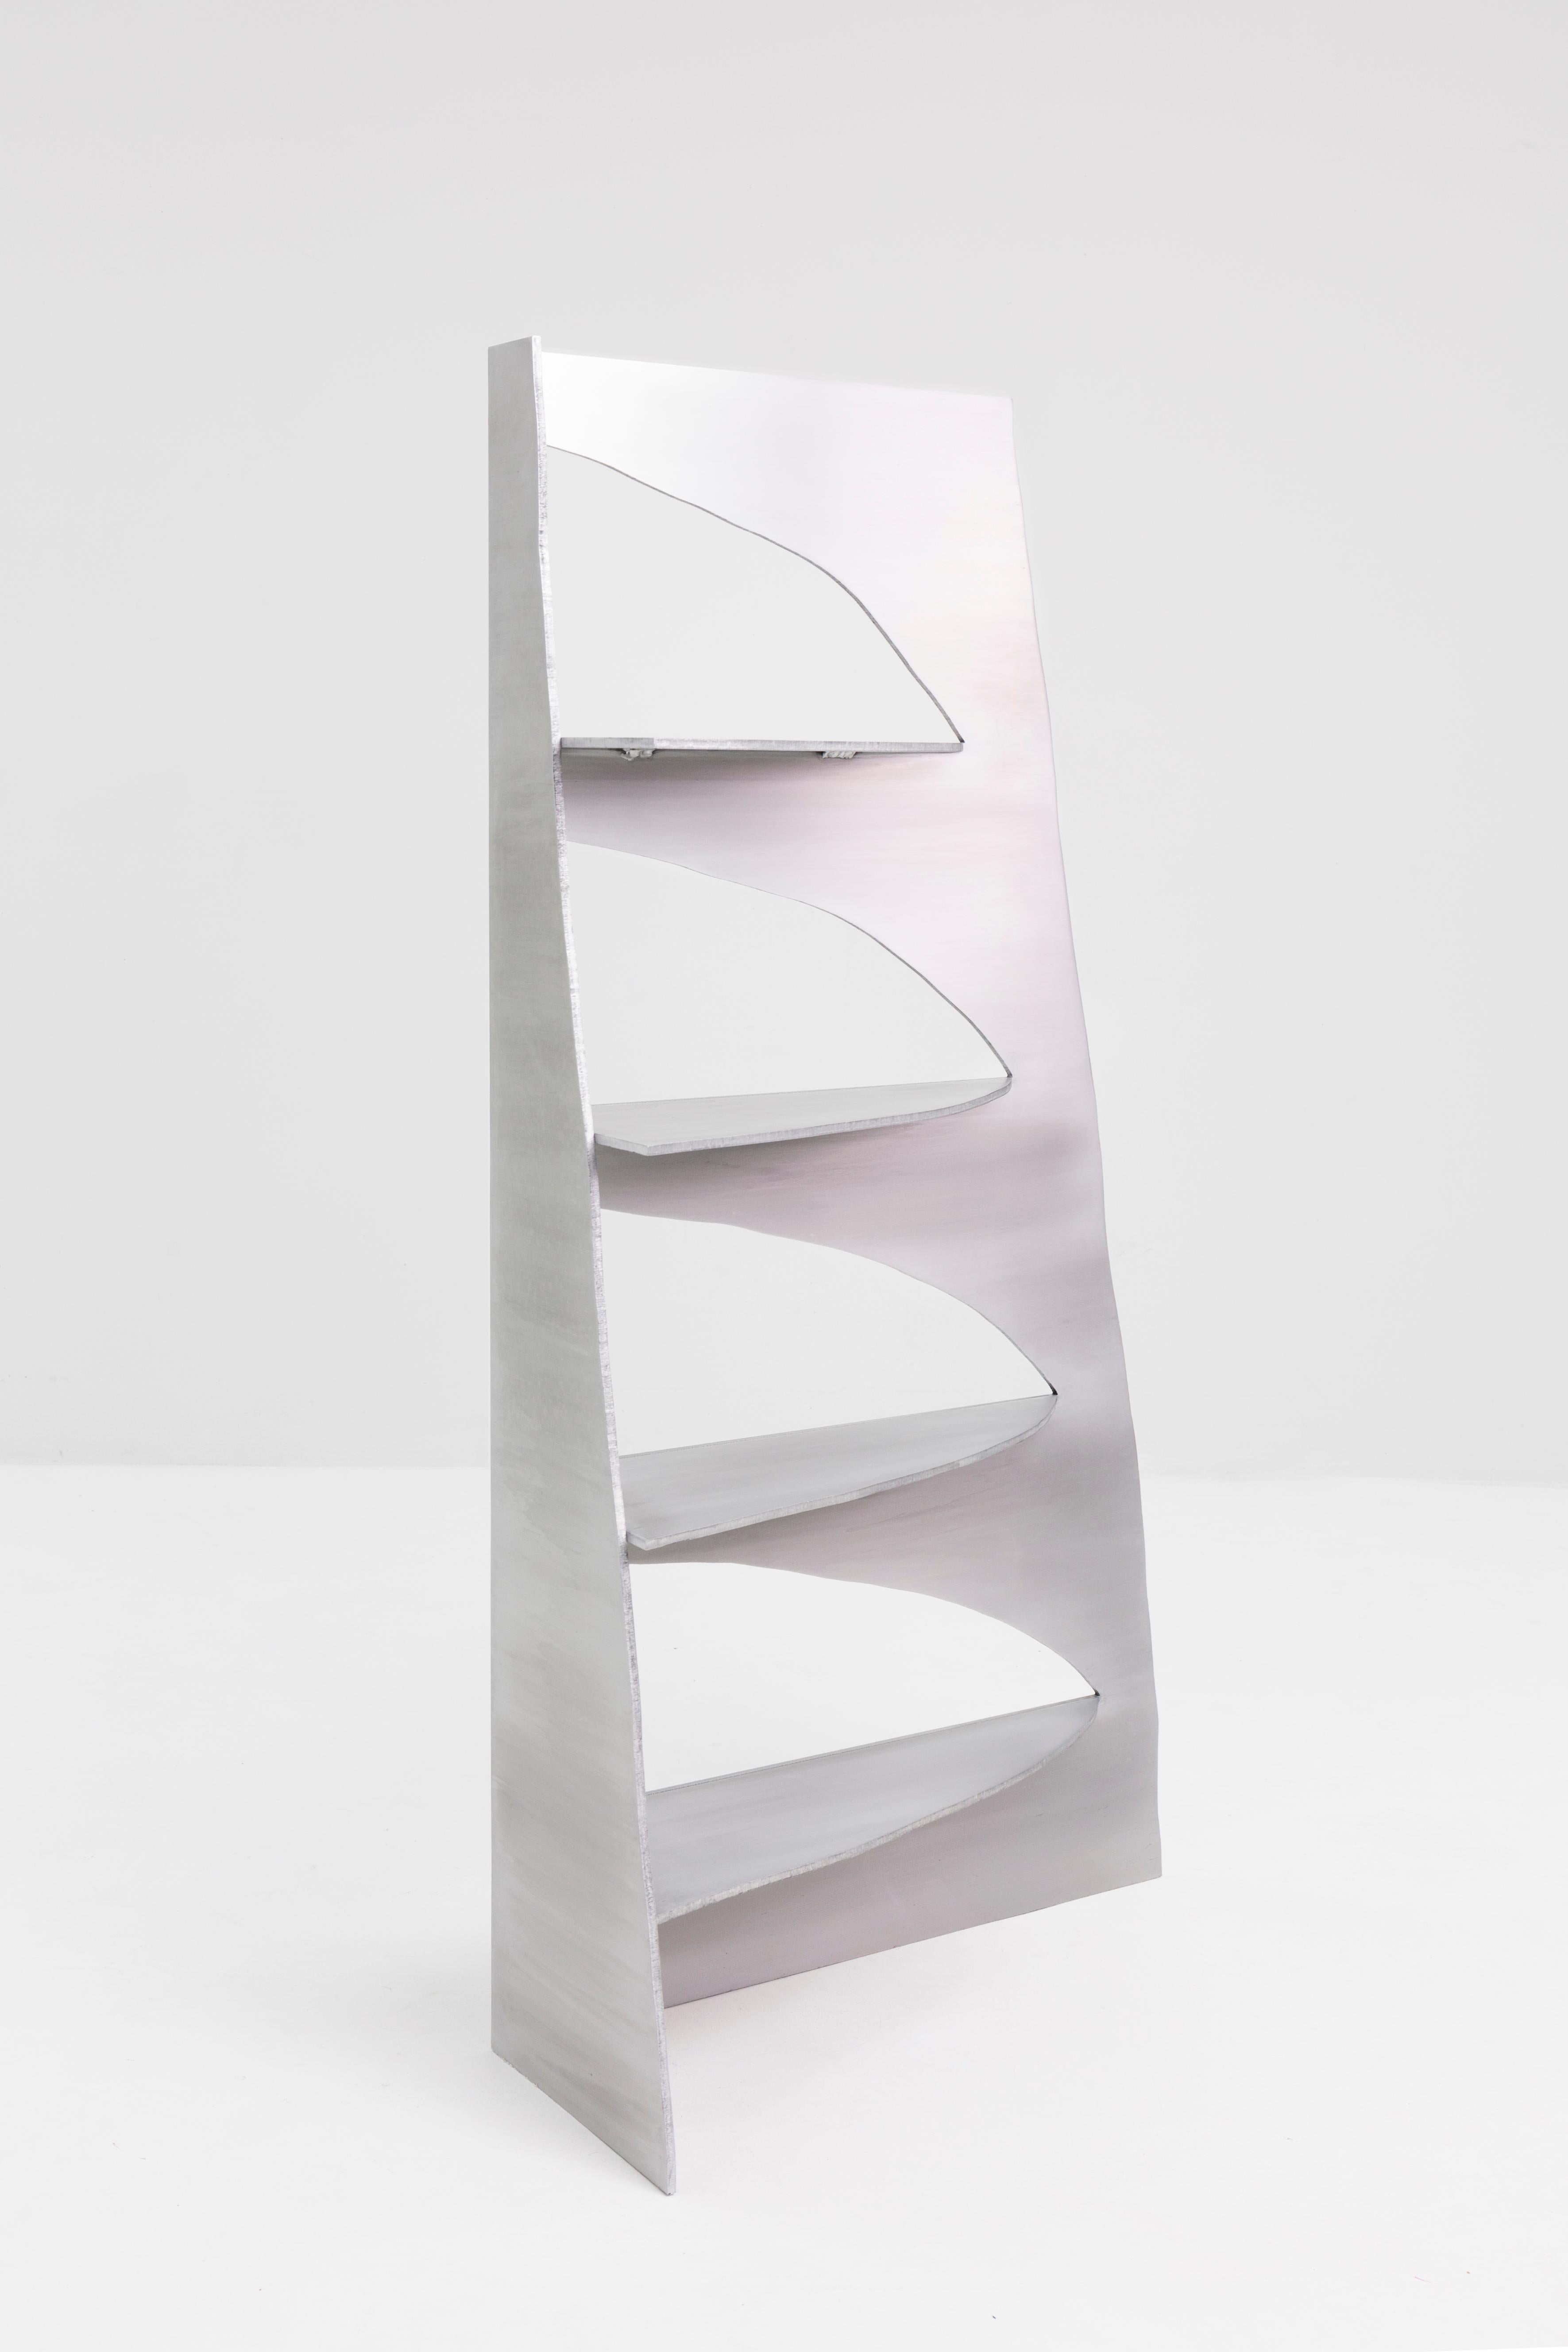 Étagère rationnelle en aluminium par le Studio Julien Manaira
Dimensions : 72,5 x 25 x 140 cm
Matériaux : Aluminium brossé et ciré


L'intention derrière ce projet est de mettre en évidence les traces des actions du créateur. En ce sens, le choix de